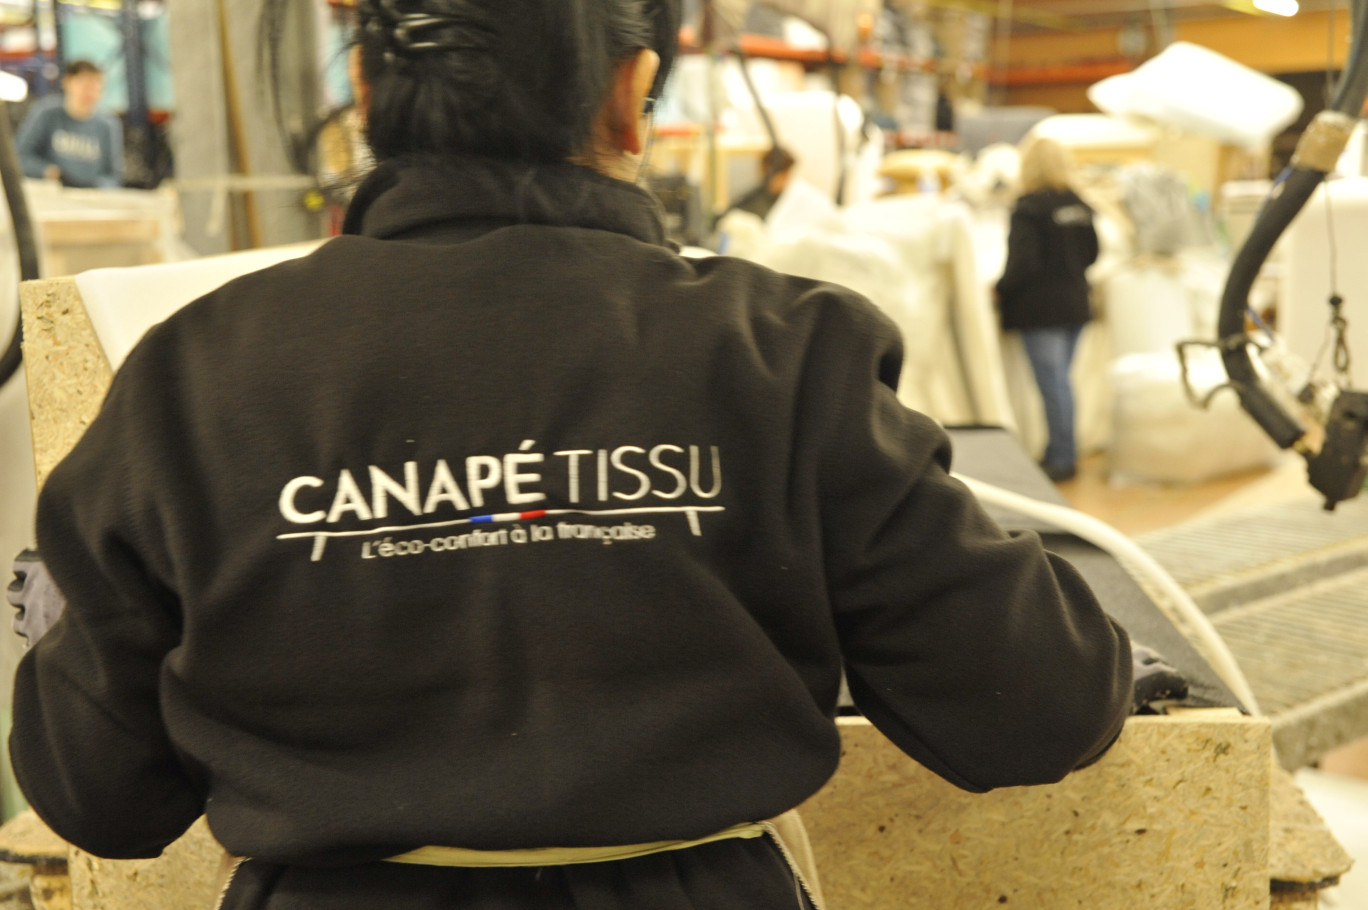 Canapé Tissu emploie une quarantaine de personnes.  (© Canapé-Tissu)